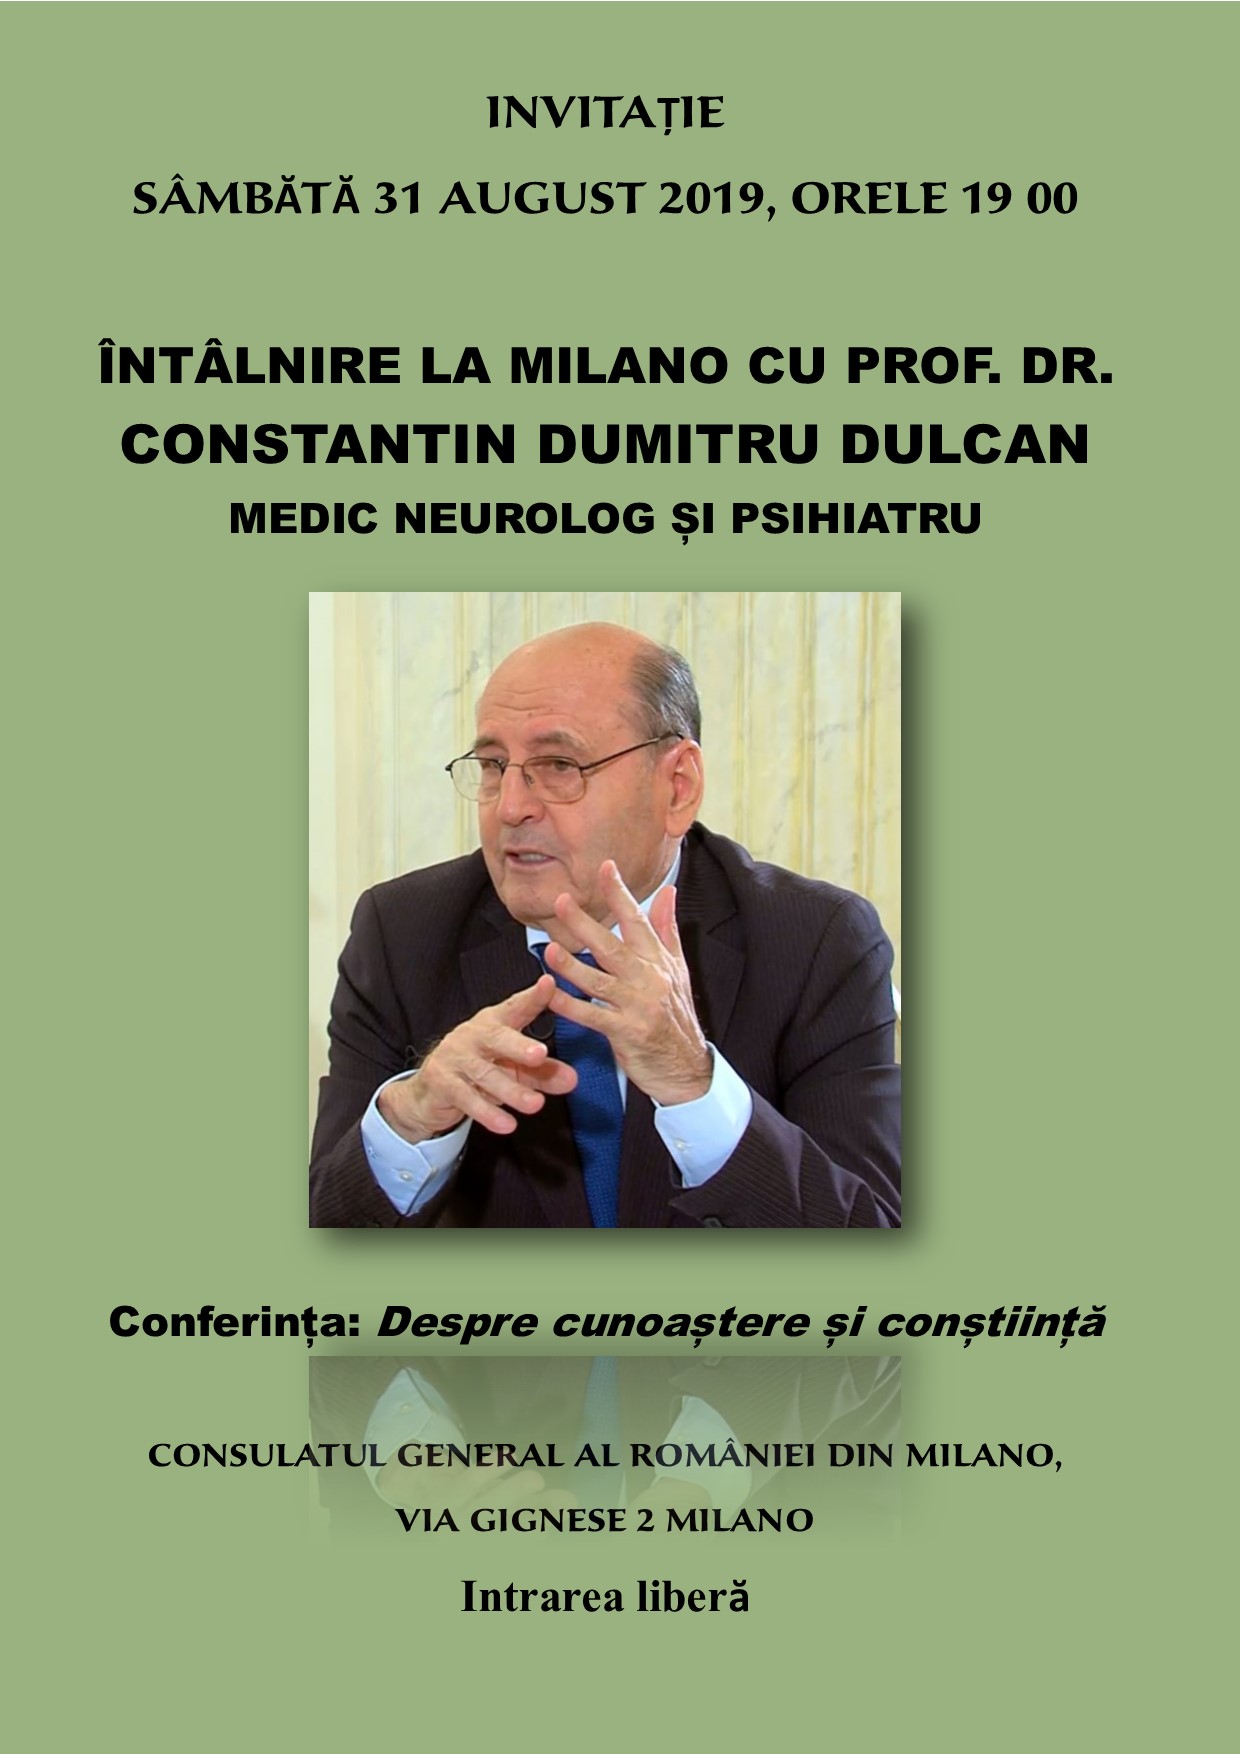 Întâlnire la Milano cu prof. dr. Constantin Dumitru Dulcan, medic neurolog și psihiatru